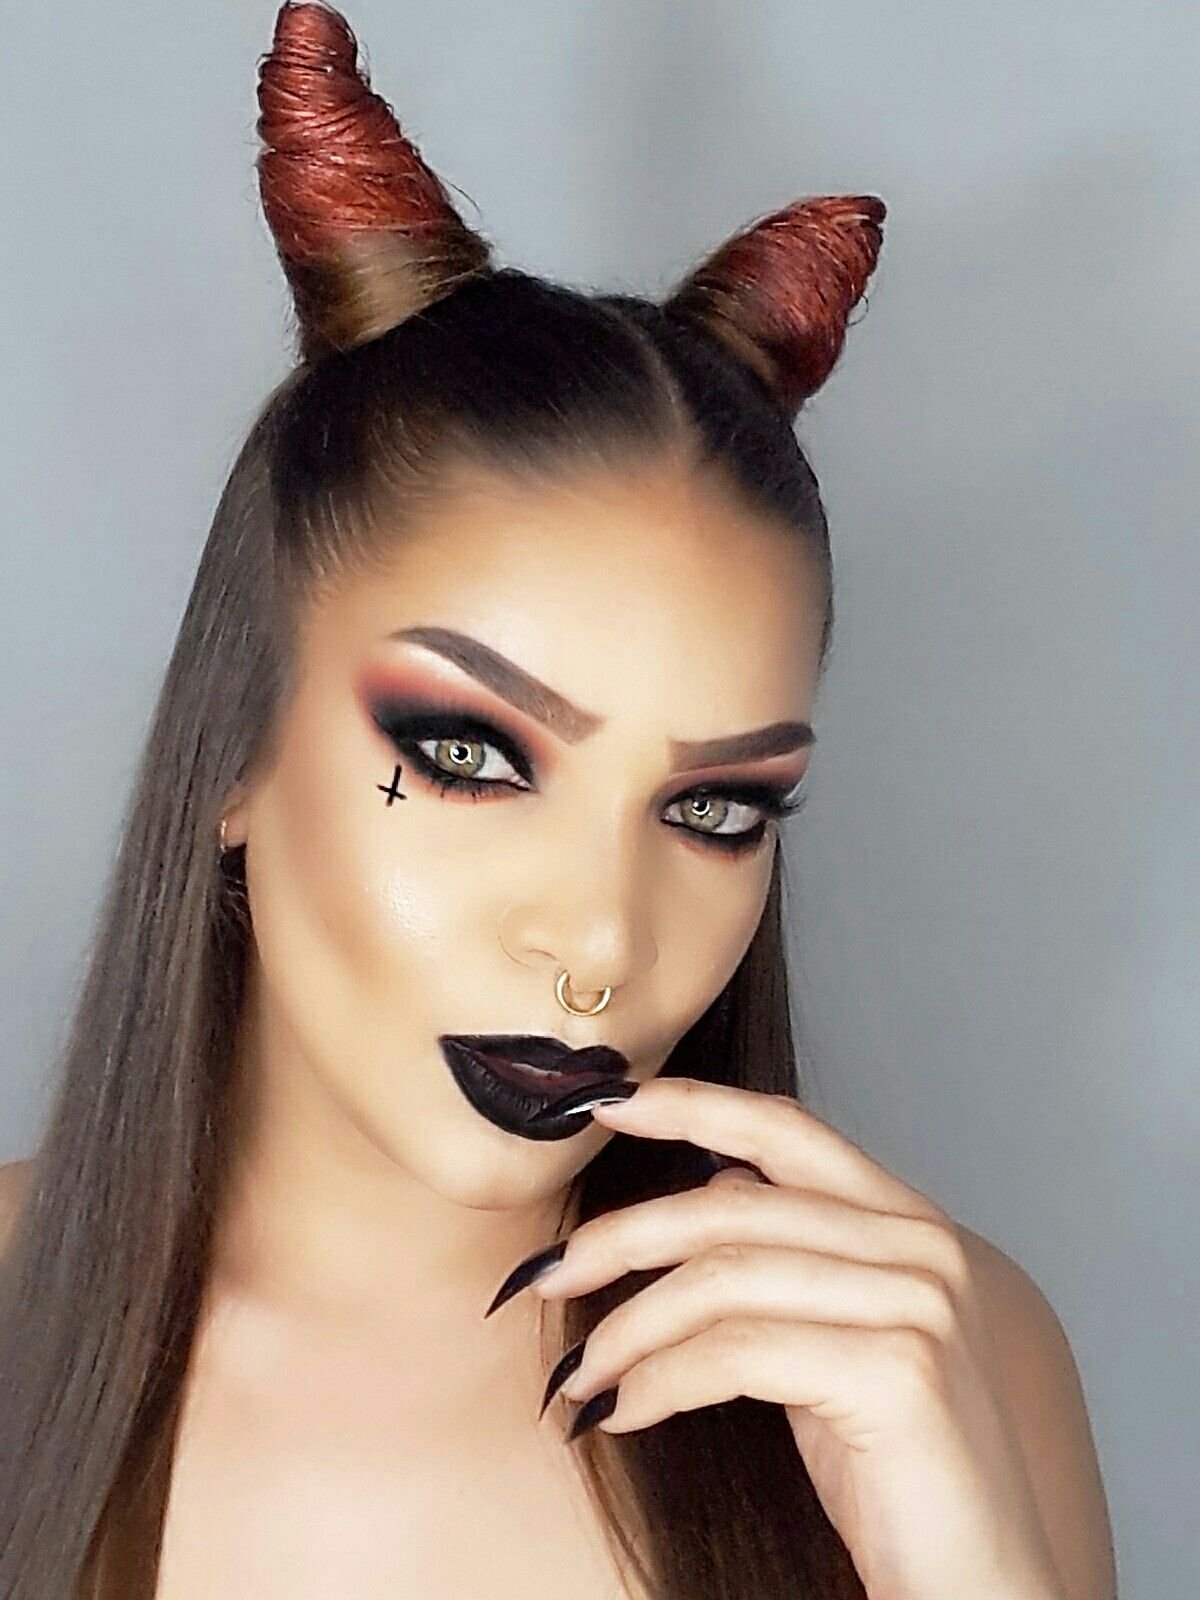 10 Great Devil Makeup Ideas For Women 2021 Devil Costume For Women Makeup